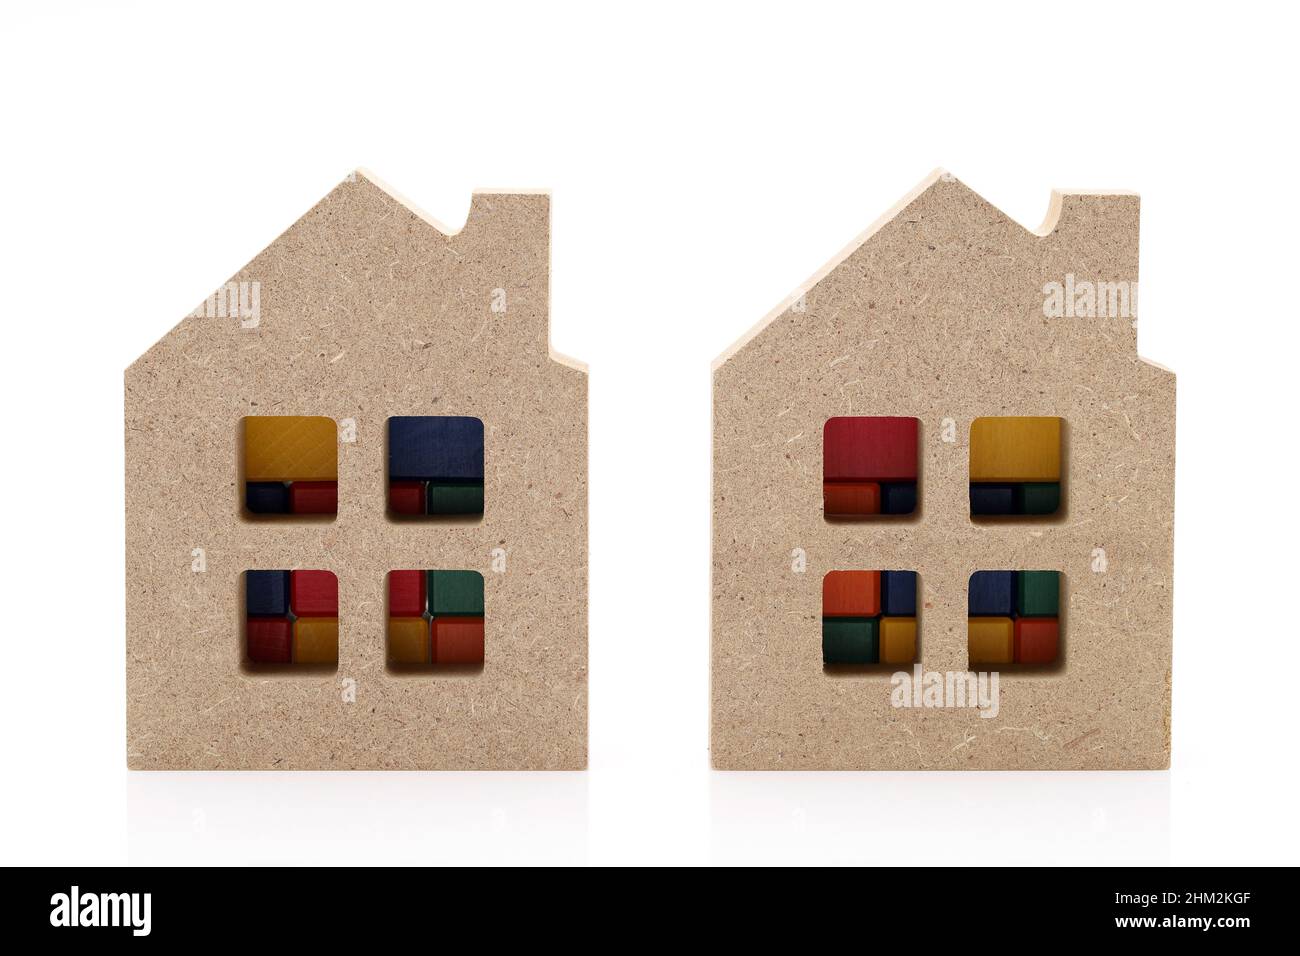 petite maison de jouets en bois isolée sur fond blanc Banque D'Images